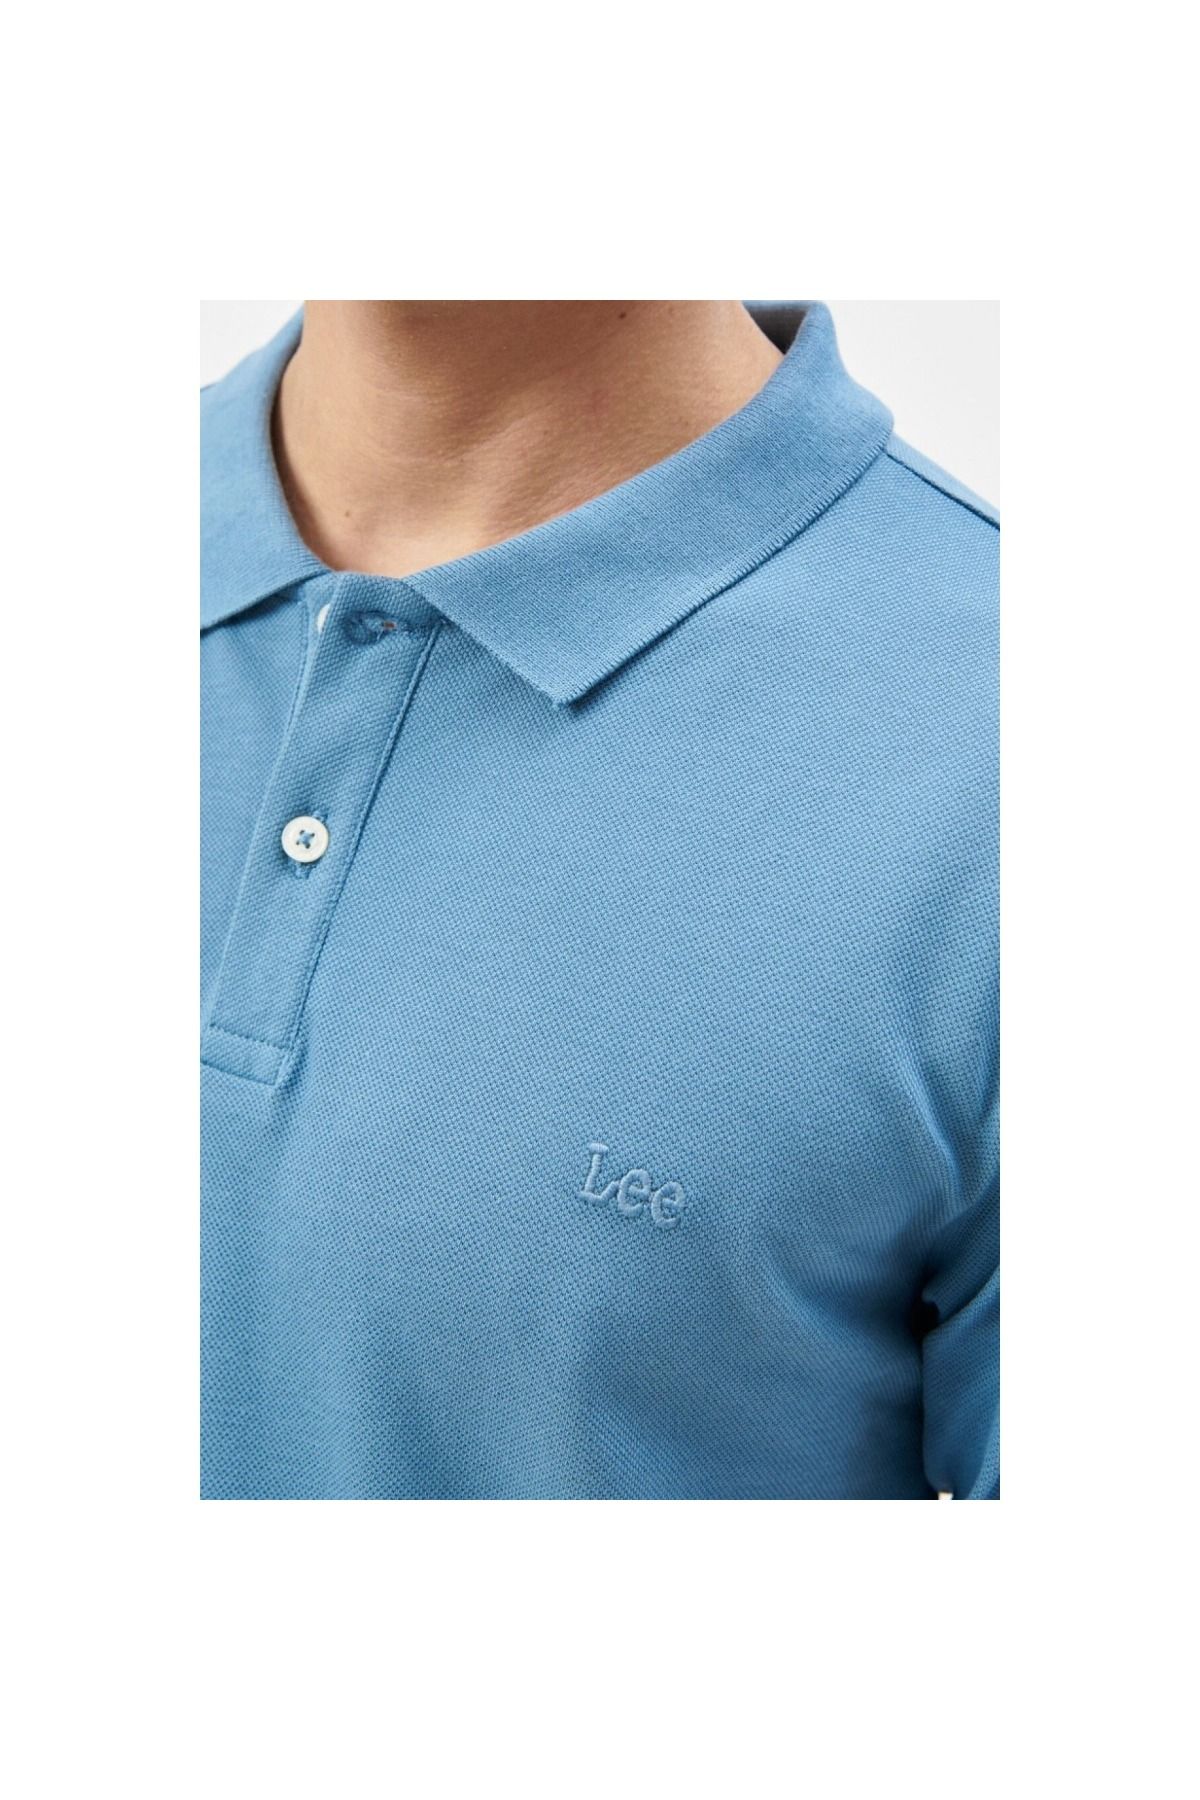 Lee شرت آبی مردانه